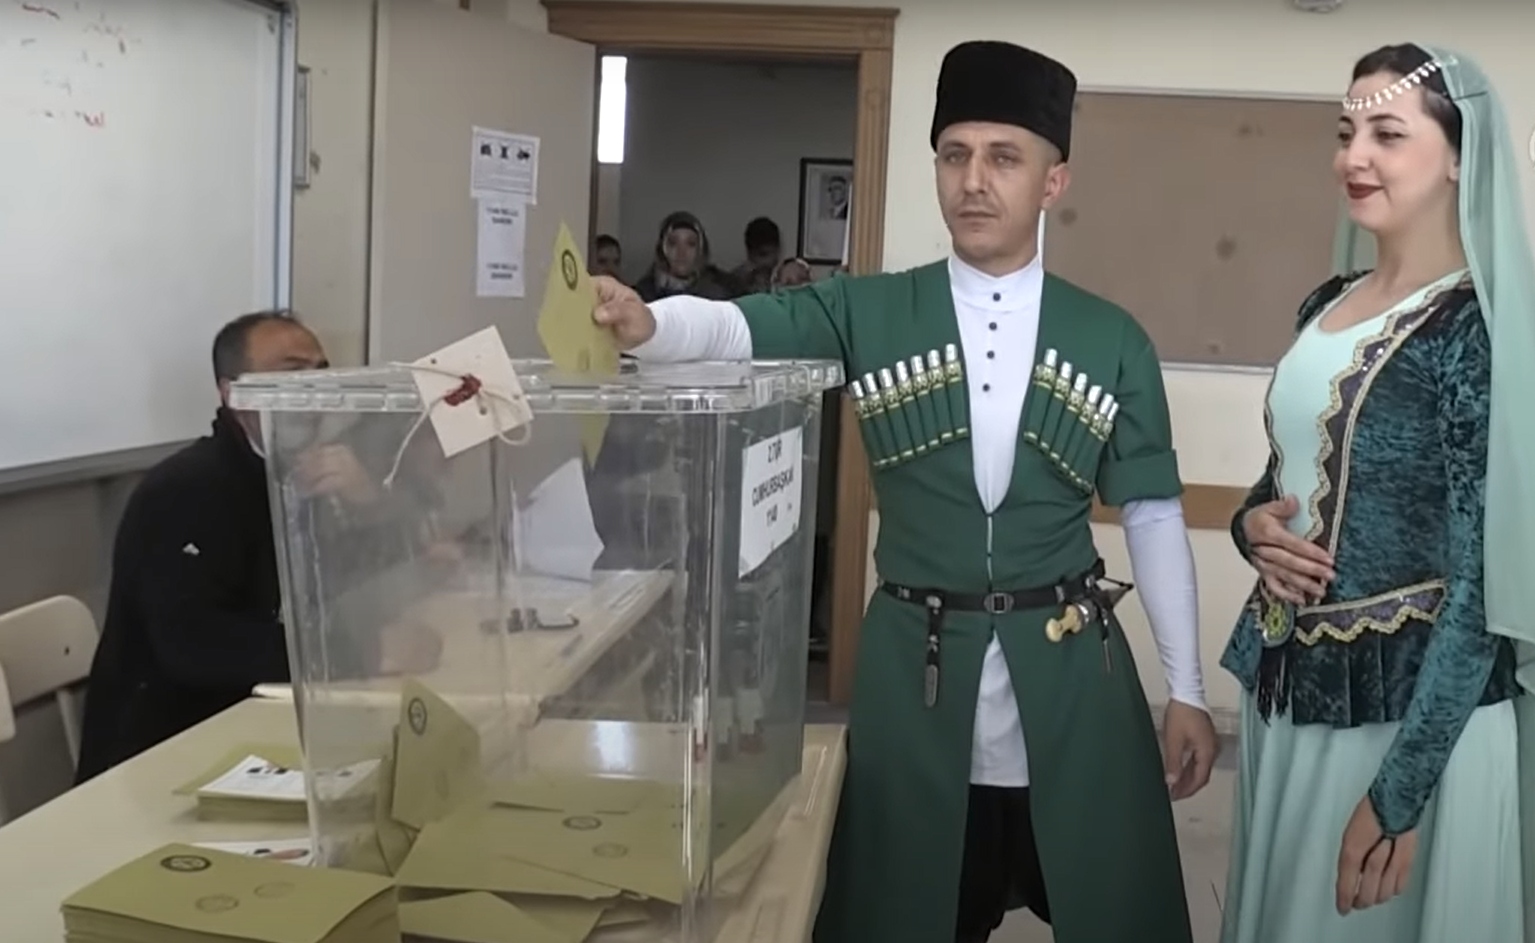 Εκλογές Τουρκία: Έβαλαν όχι τα καλά τους, αλλά παραδοσιακές στολές και πήγαν να ψηφίσουν